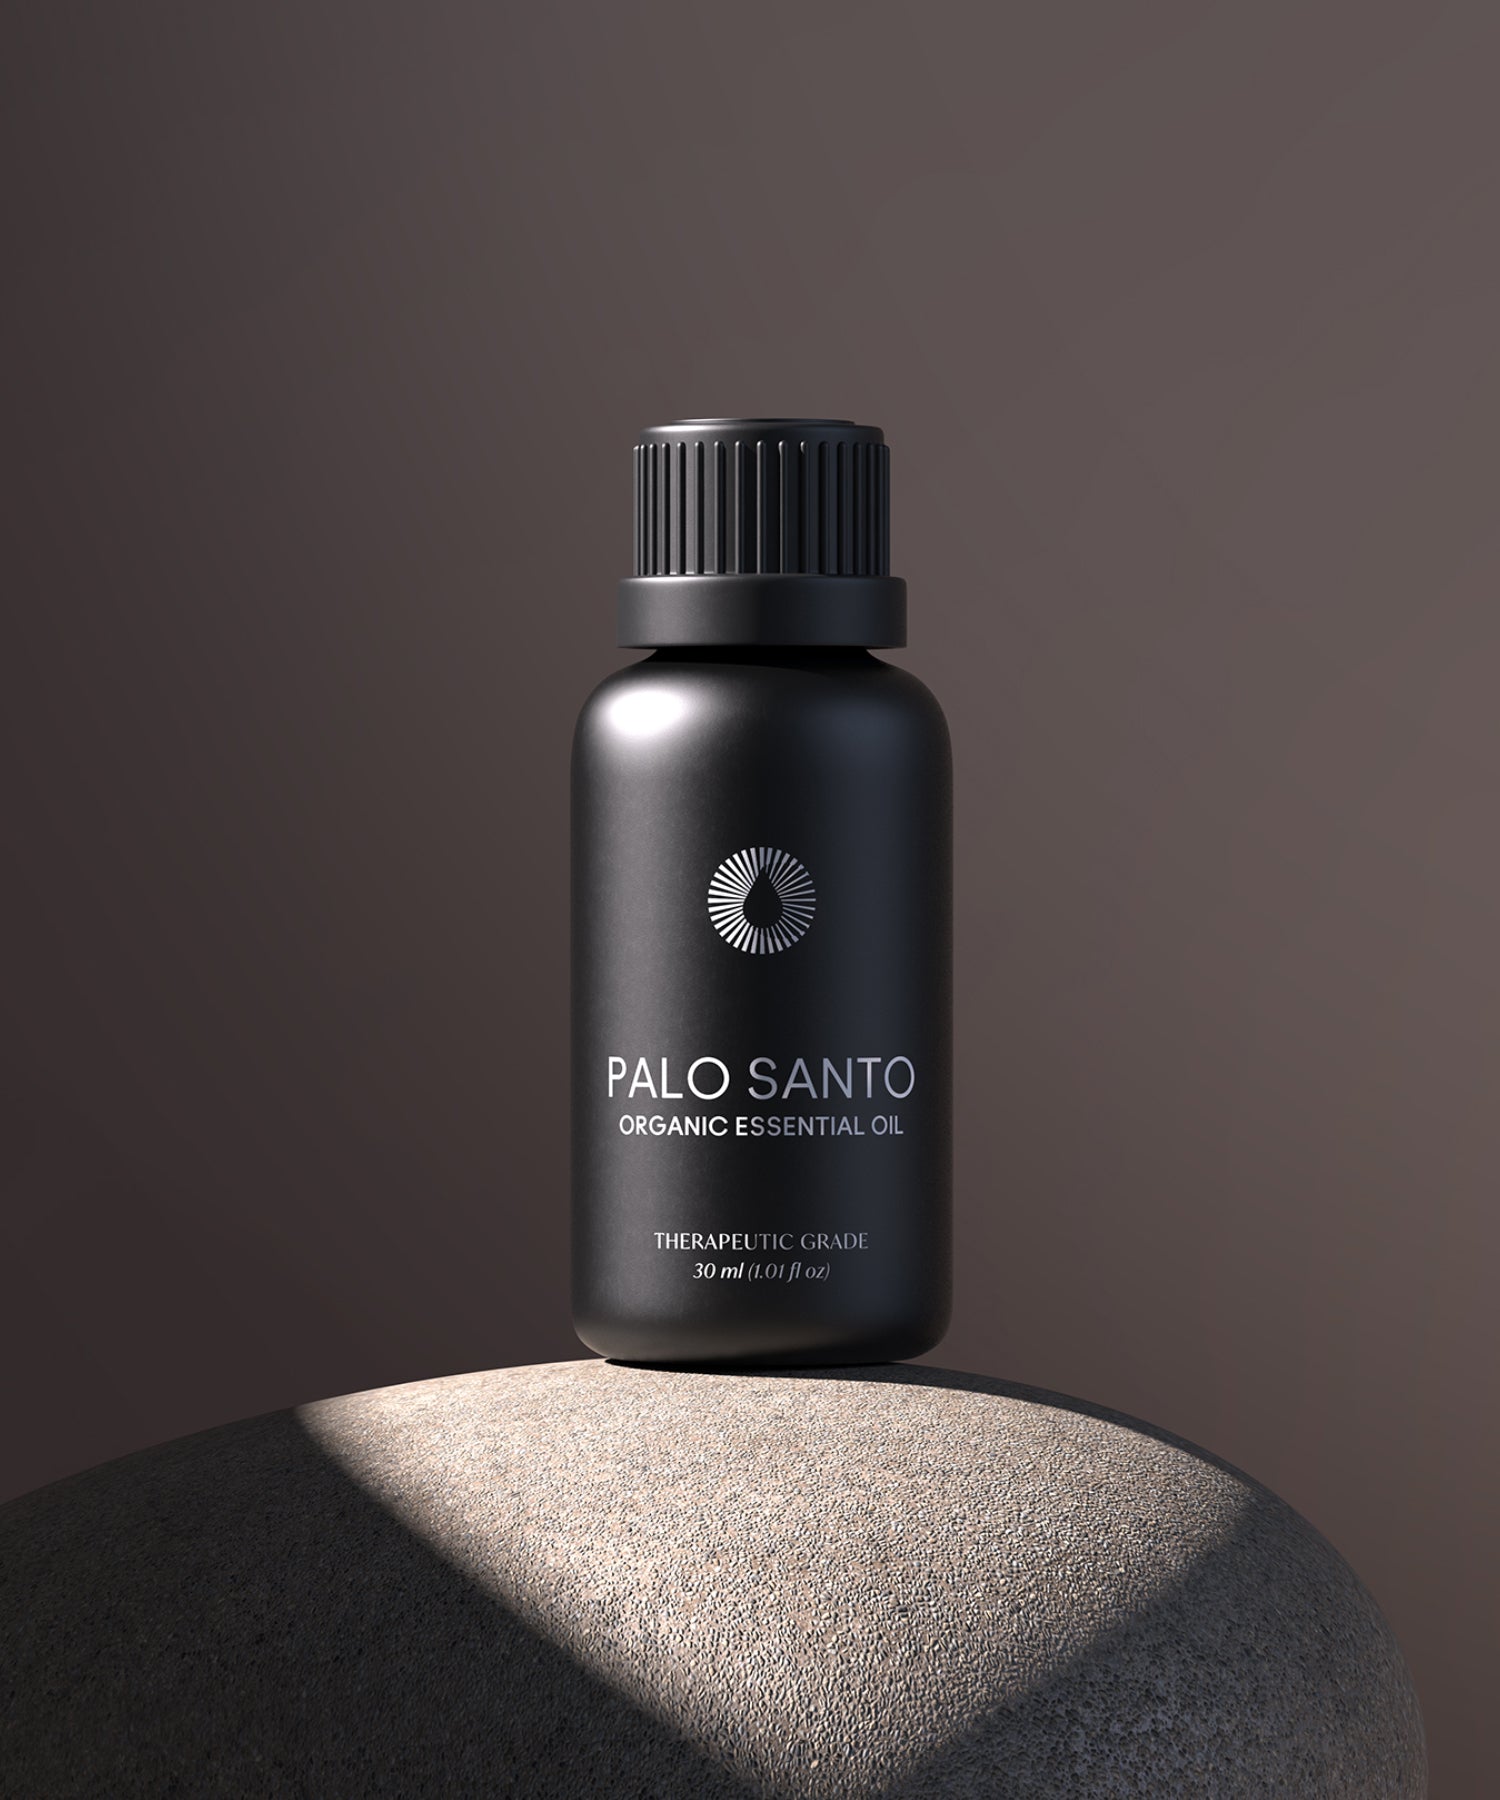 Pure Palo Santo Essential Oil - 100% Natural and Therapeutic Grade